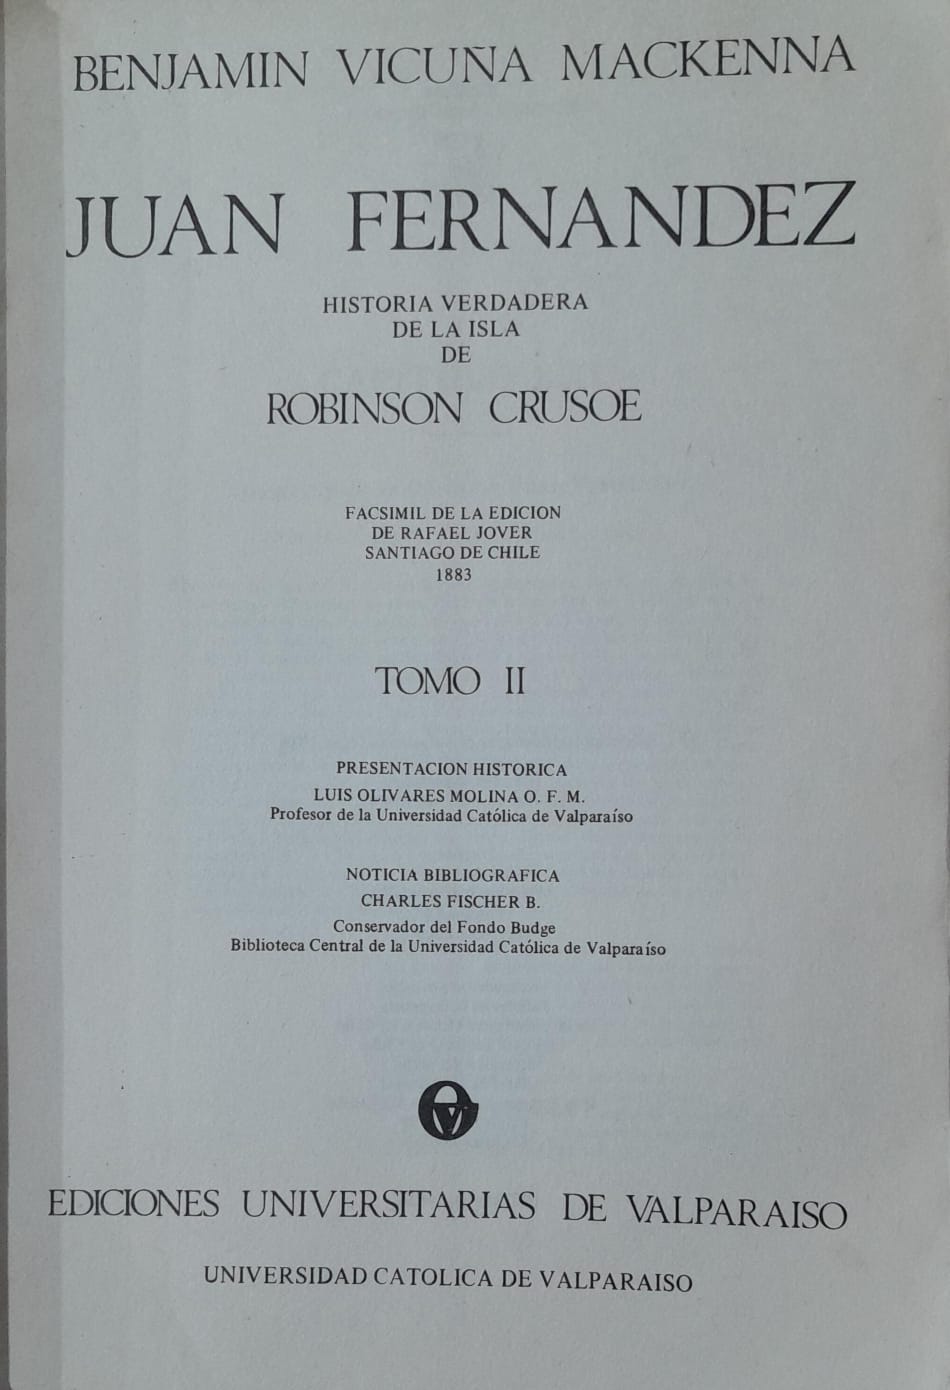 Juan Fernandez: historia verdadera de la isla de Robinson Crusoe